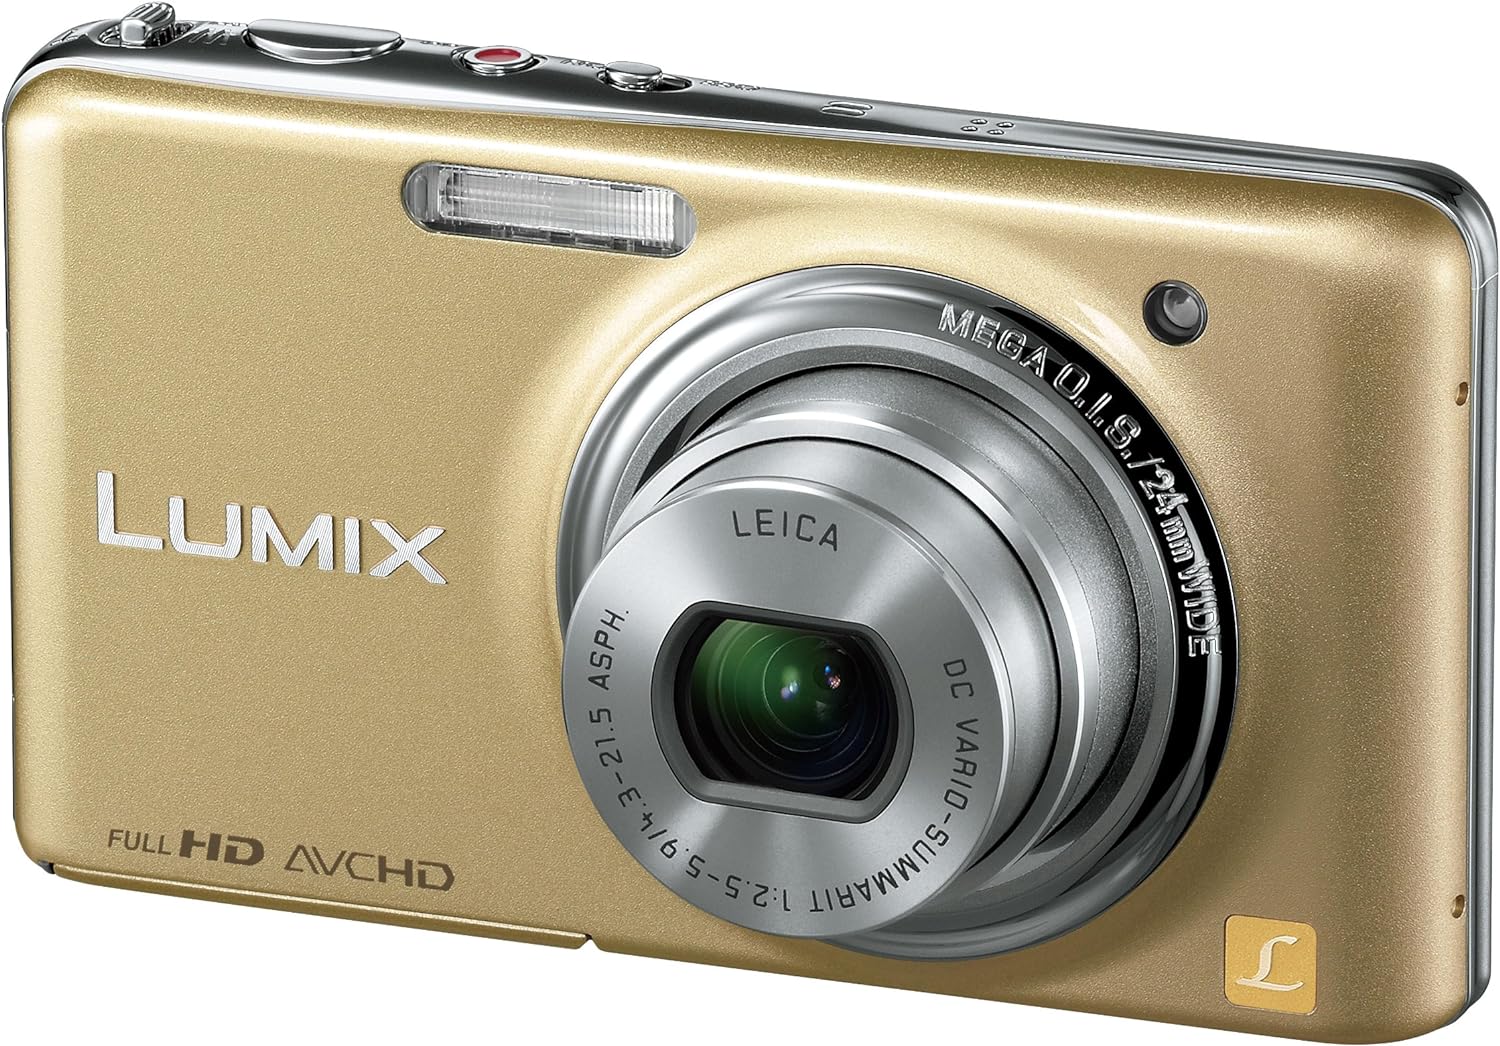 【中古】パナソニック デジタルカメラ LUMIX FX77 レオパードゴールド DMC-FX77-N